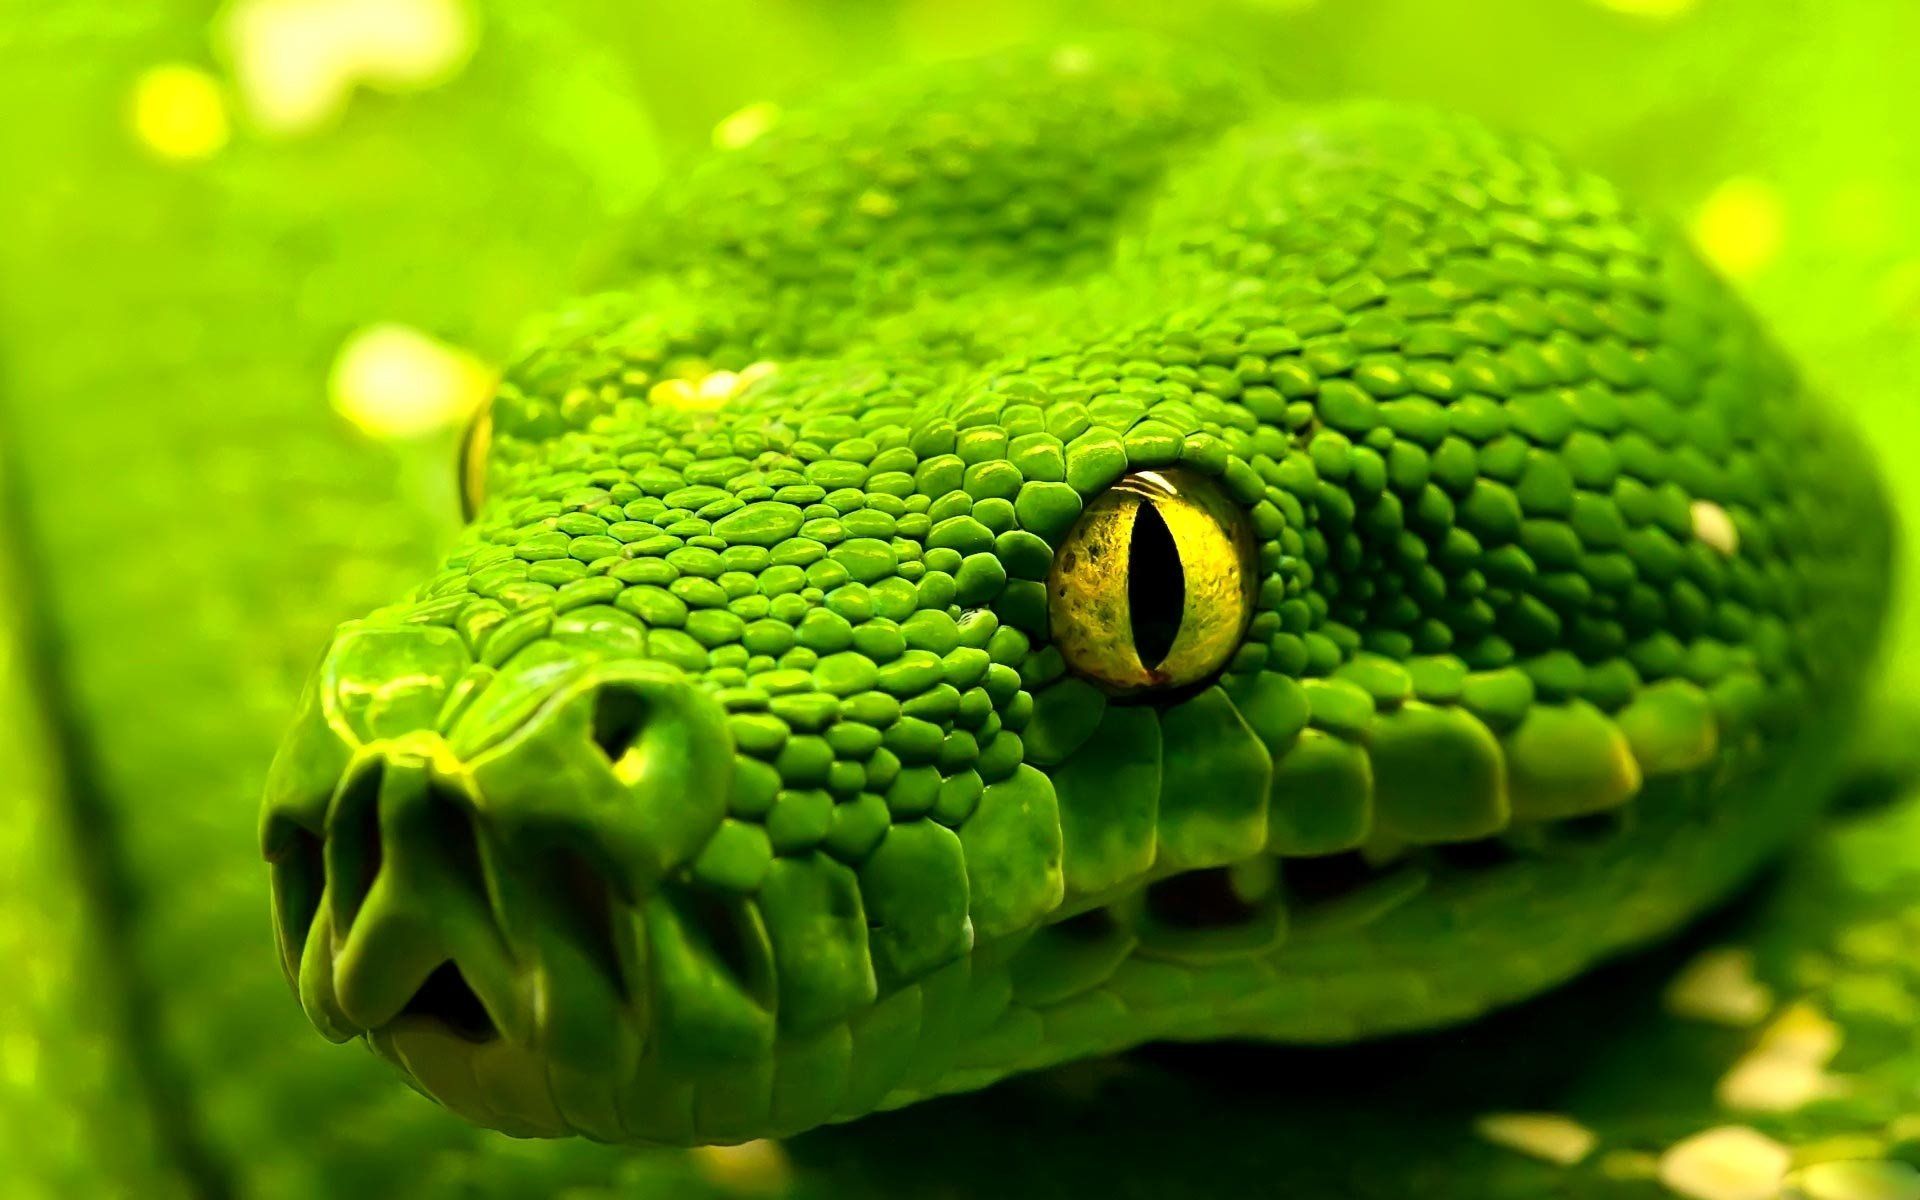 1416 Reptiles Fondos de pantalla HD | Imágenes de fondo